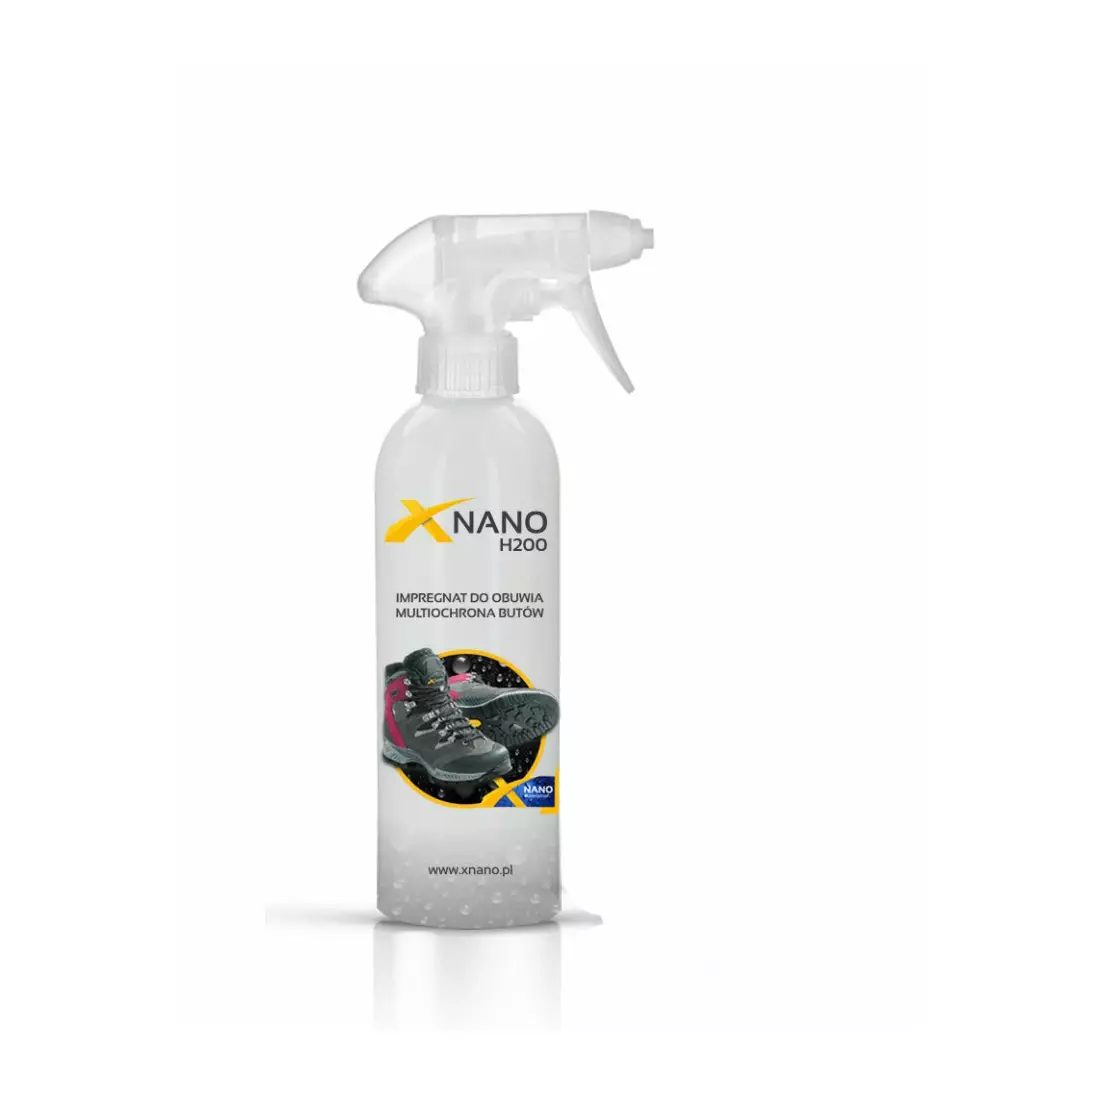 NANOBIZ - XNANO - H200 Multi-ochranná impregnácia na obuv, objem: 250 ml